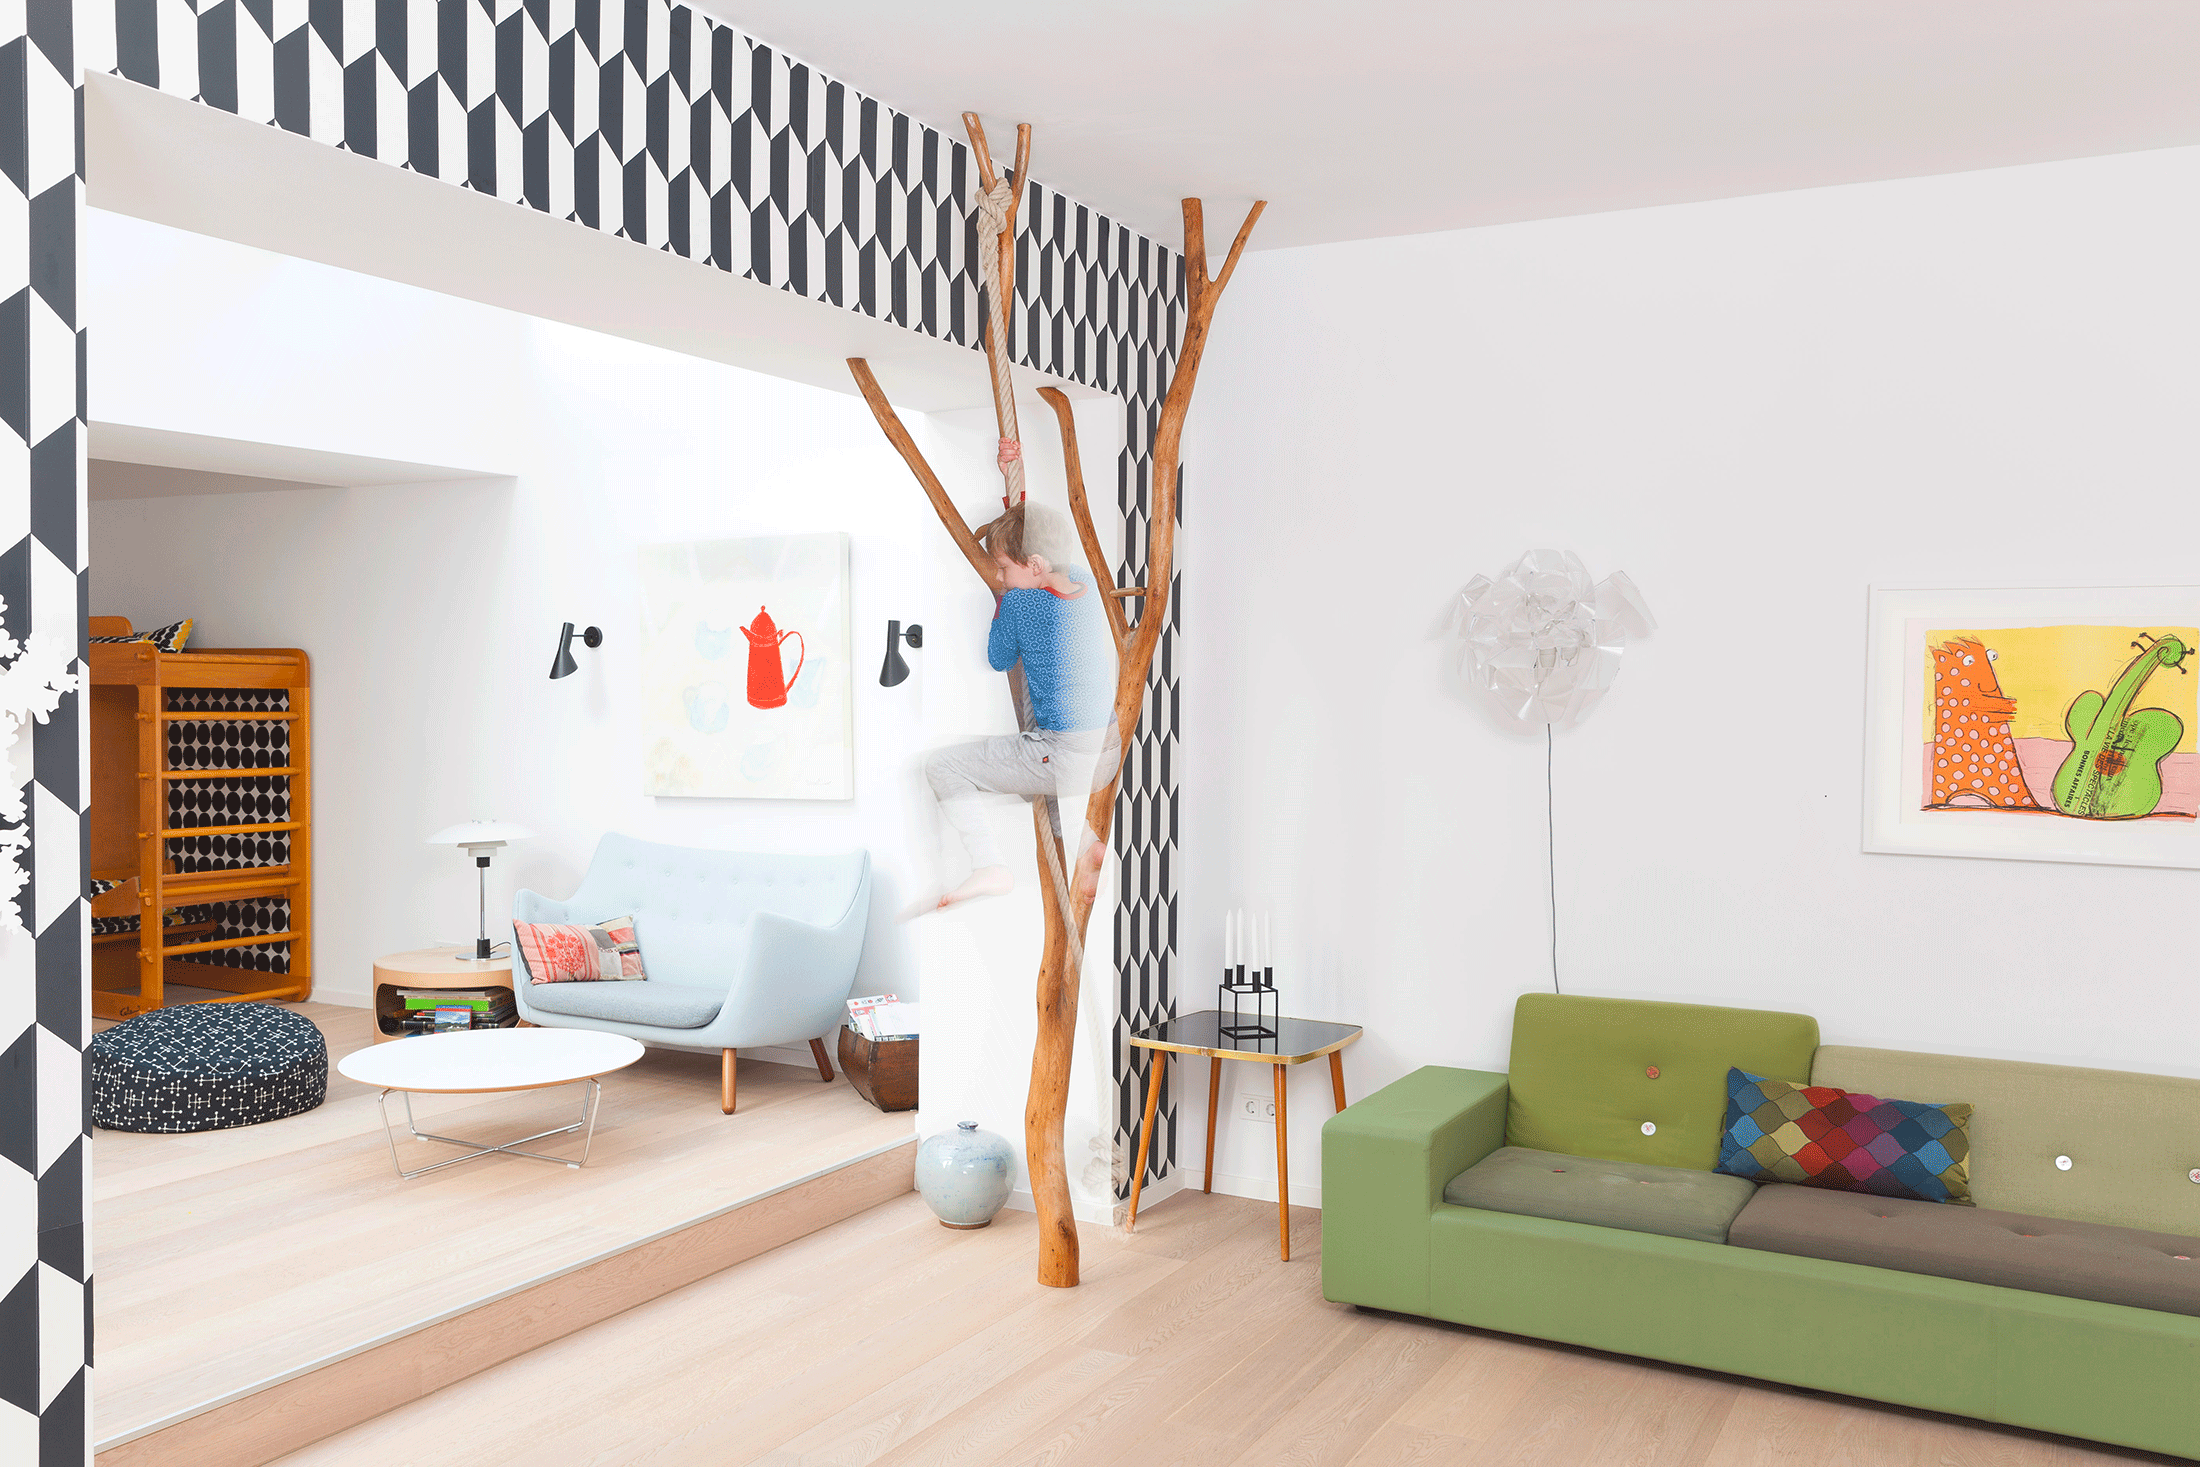 Wohnzimmer mit an Wilholzkonstruktion kletterndem Kind